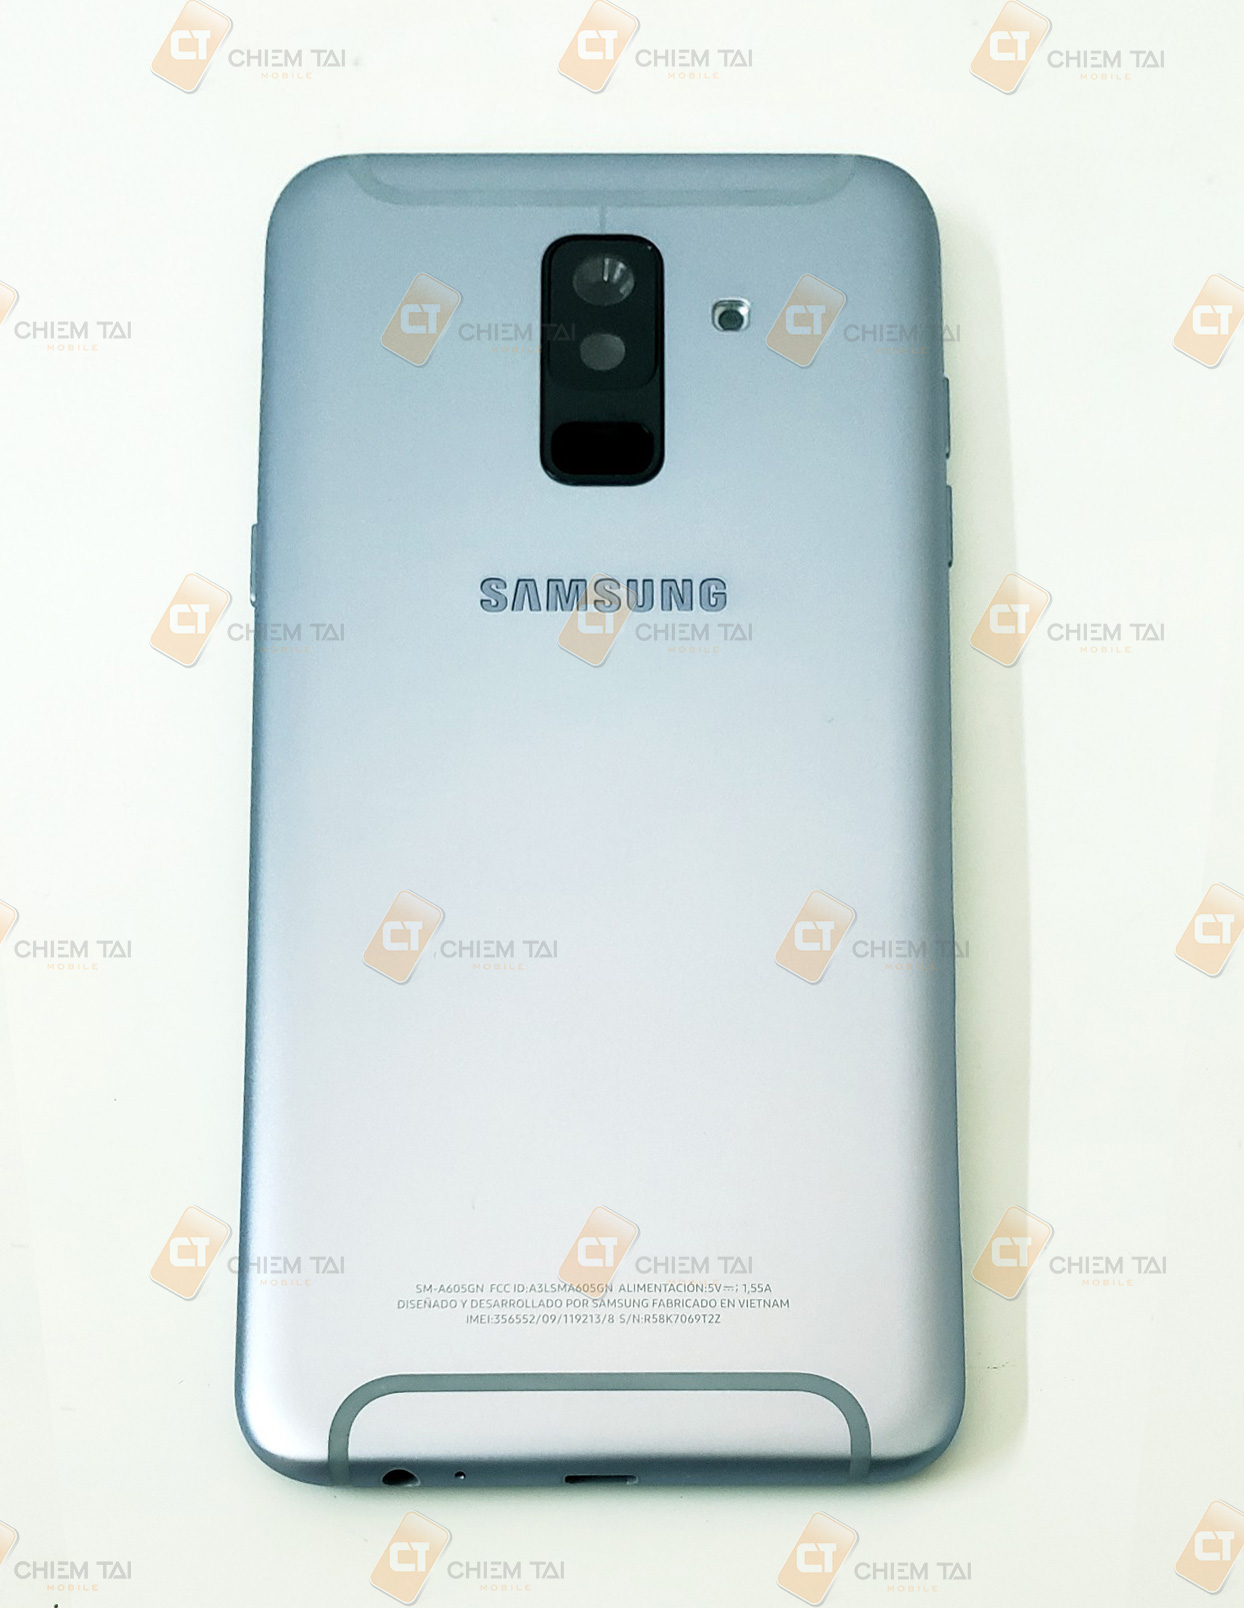 Bộ vỏ Samsung Galaxy A6+ 2018 zin công ty (màu đen, vàng, xanh, tím)